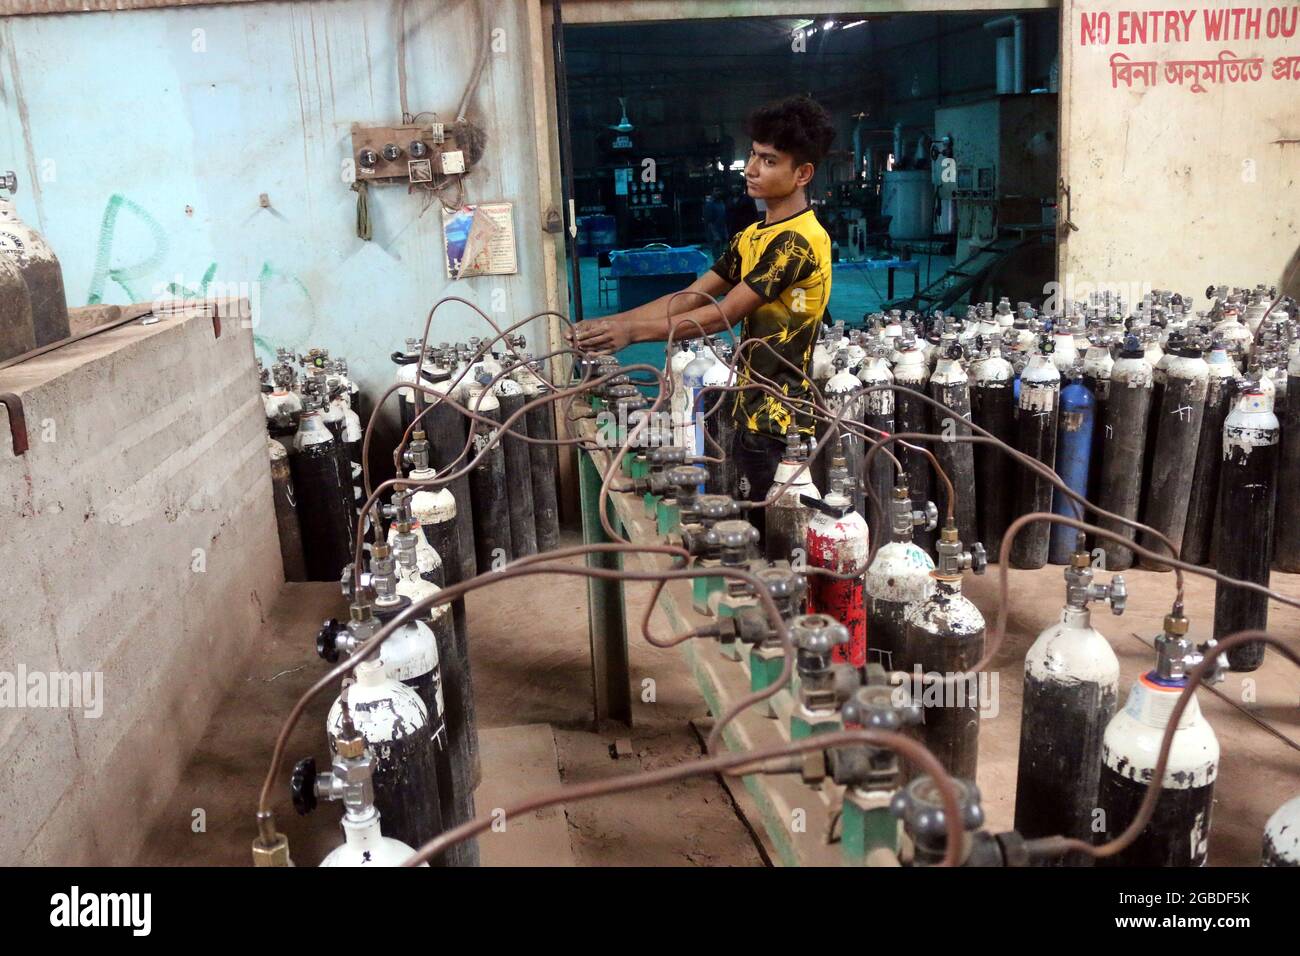 Dhaka, Bangladesch, 3. August 2021: Ein Arbeiter füllt Sauerstofftanks in einer Fabrik auf, um medizinische Sauerstoffversorgung an Krankenhäuser zur Behandlung von COVID-19-Patienten während einer zweiten Infektionswelle zu liefern, nachdem Indien den Export aufgrund einer Zunahme der COVID-19-positiven Fälle durch die Delta-Variante gestoppt hatte, die erstmals in Indien nachgewiesen wurde. Kredit: Habibur Rahman / Eyepix Gruppe/Alamy Live Nachrichten Stockfoto